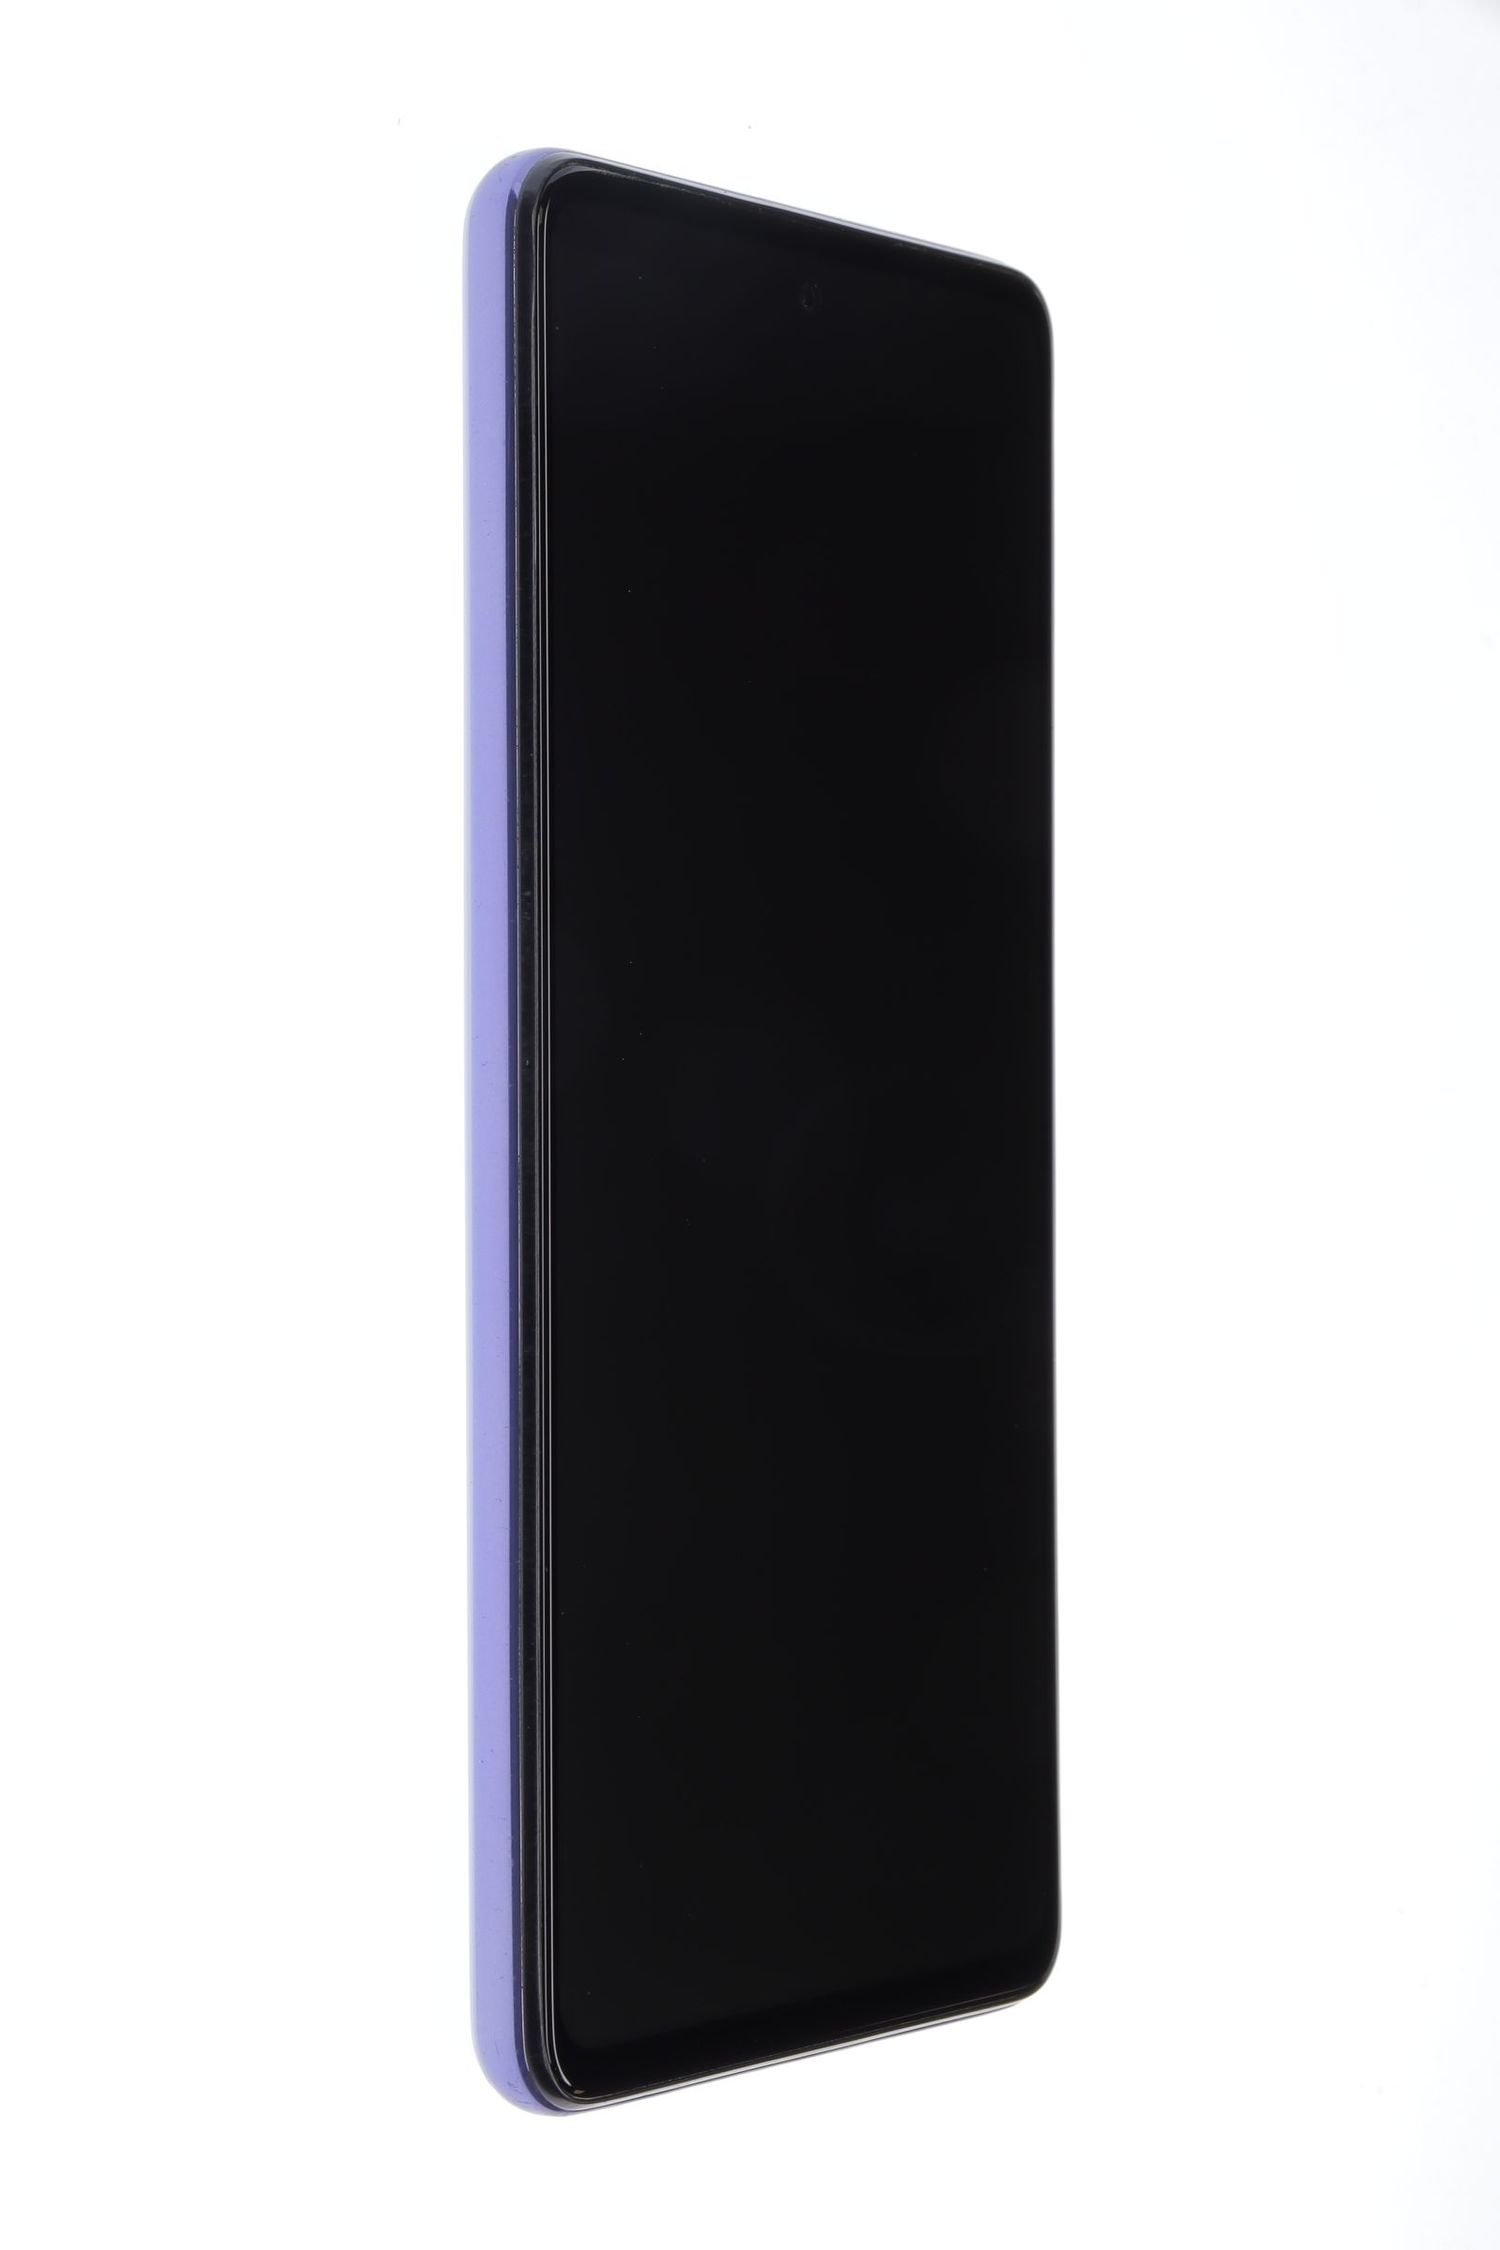 Κινητό τηλέφωνο Samsung Galaxy A52 5G Dual Sim, Violet, 128 GB, Excelent